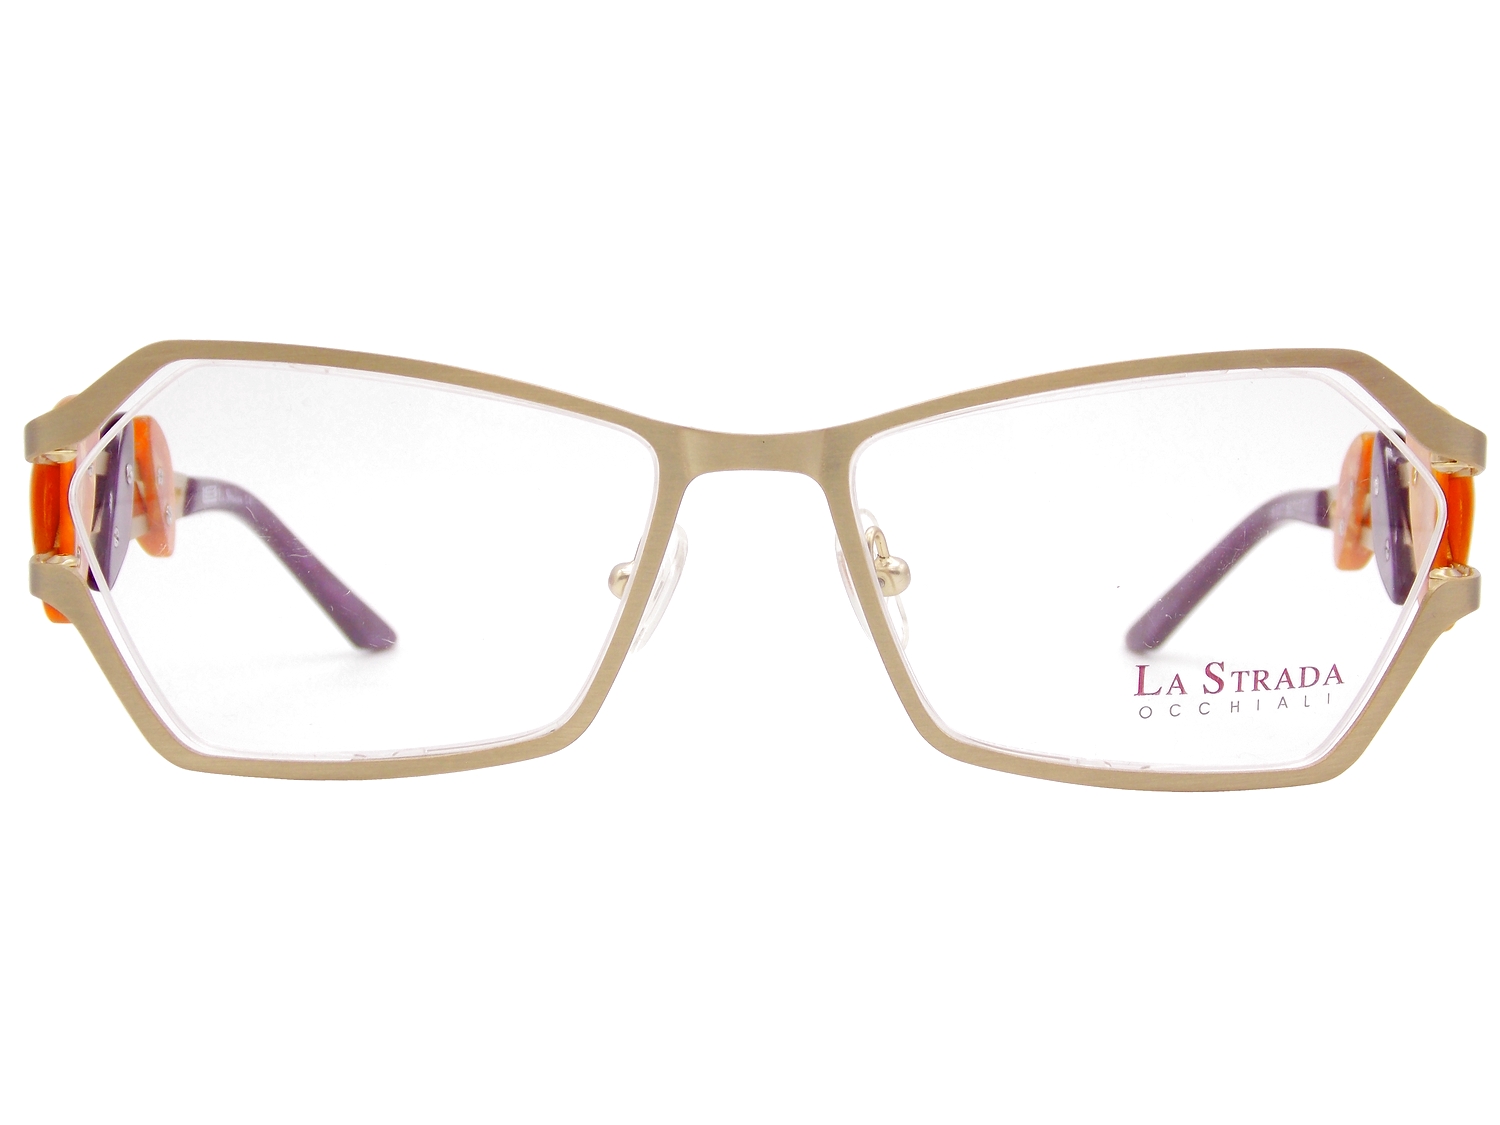 LaStrada 9107 1 occhiali